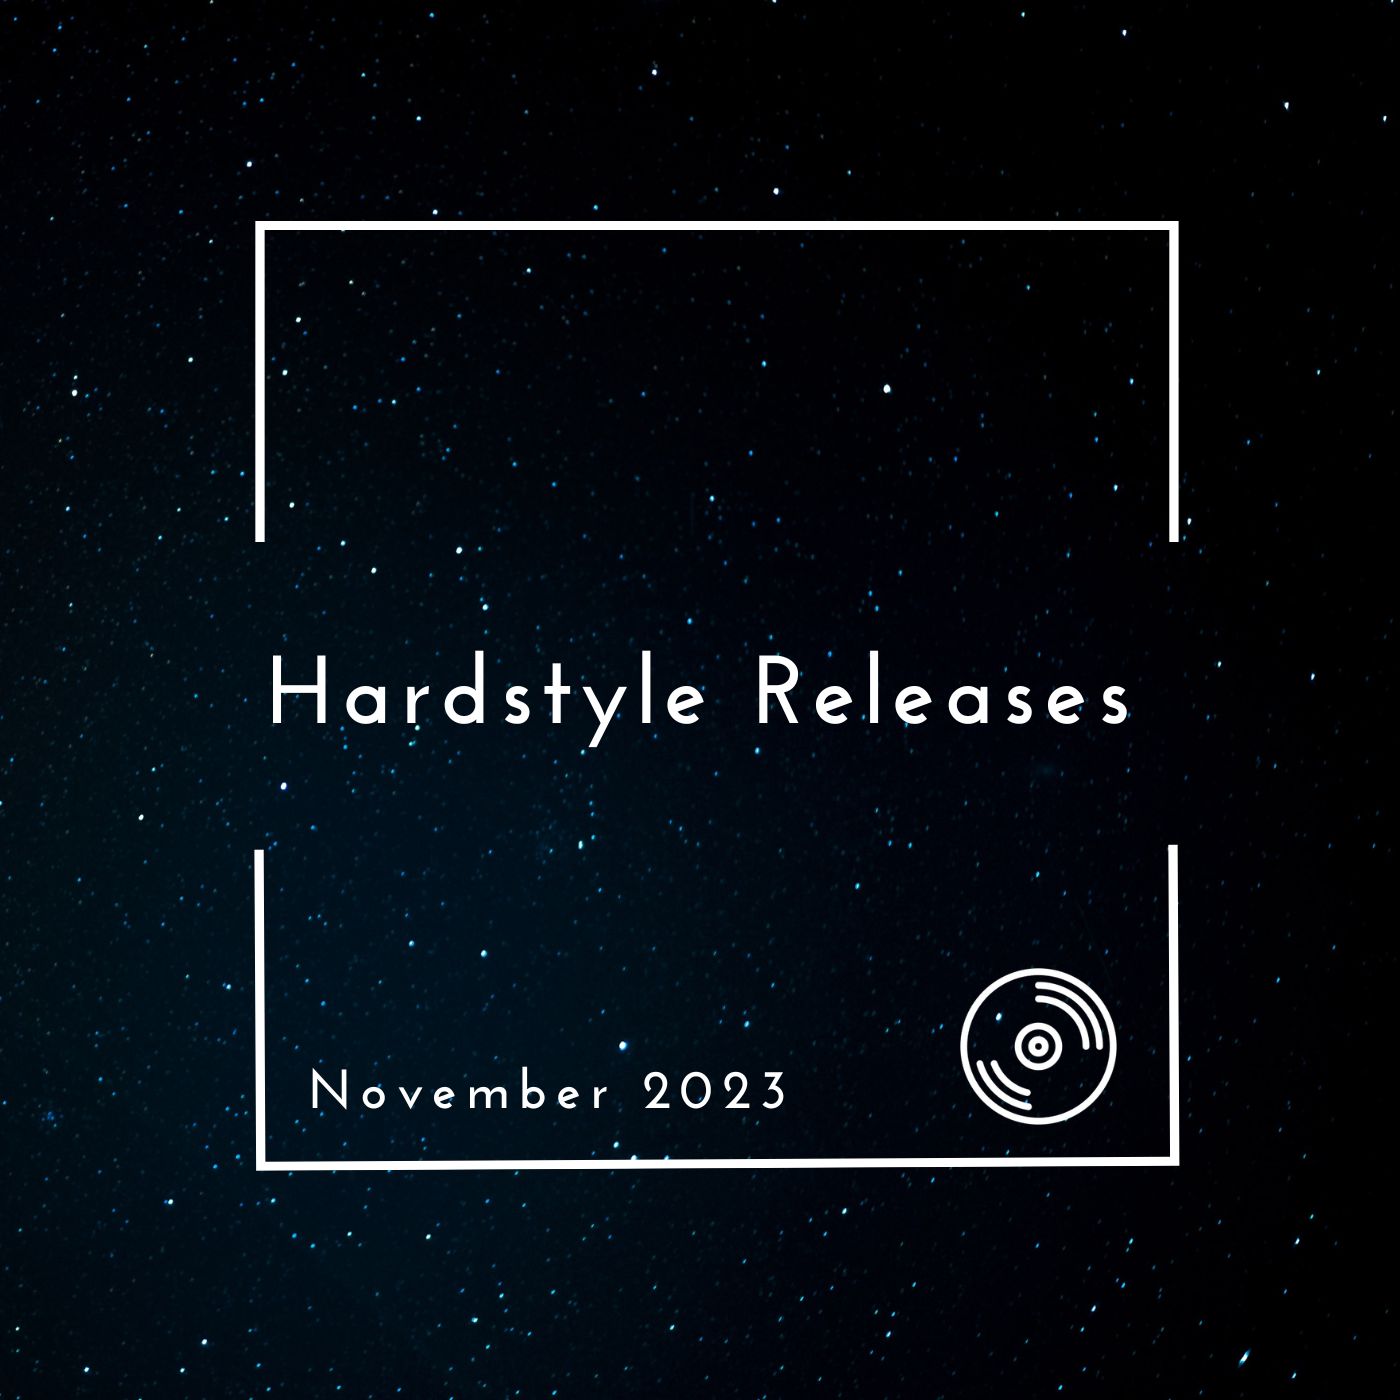 Hardstyle Releases November 2023